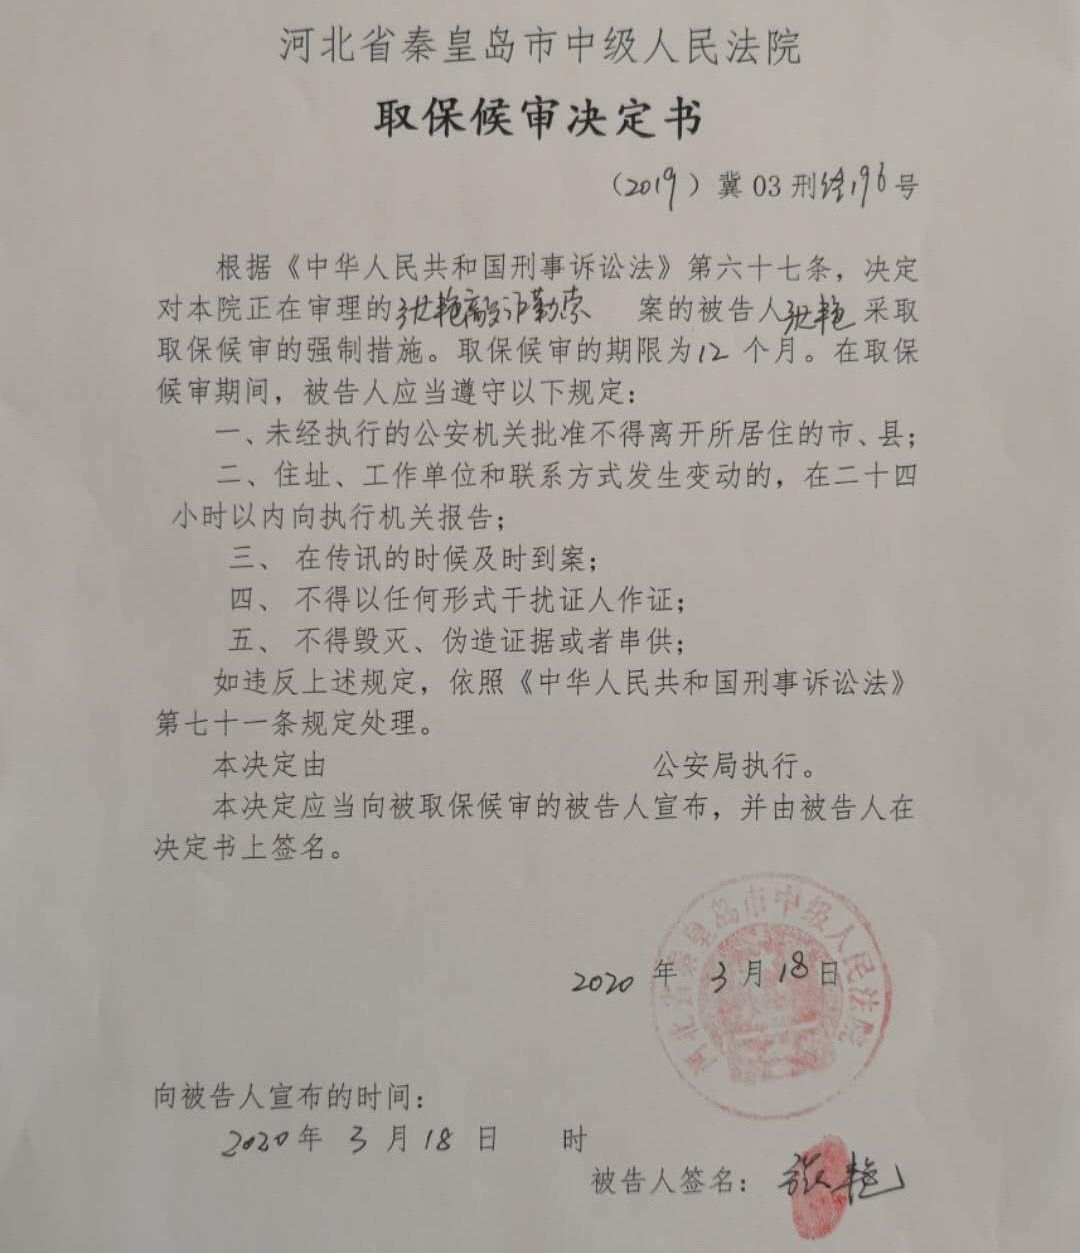 河北女企业家质疑招标造假被诉敲诈，一审无罪检方抗诉